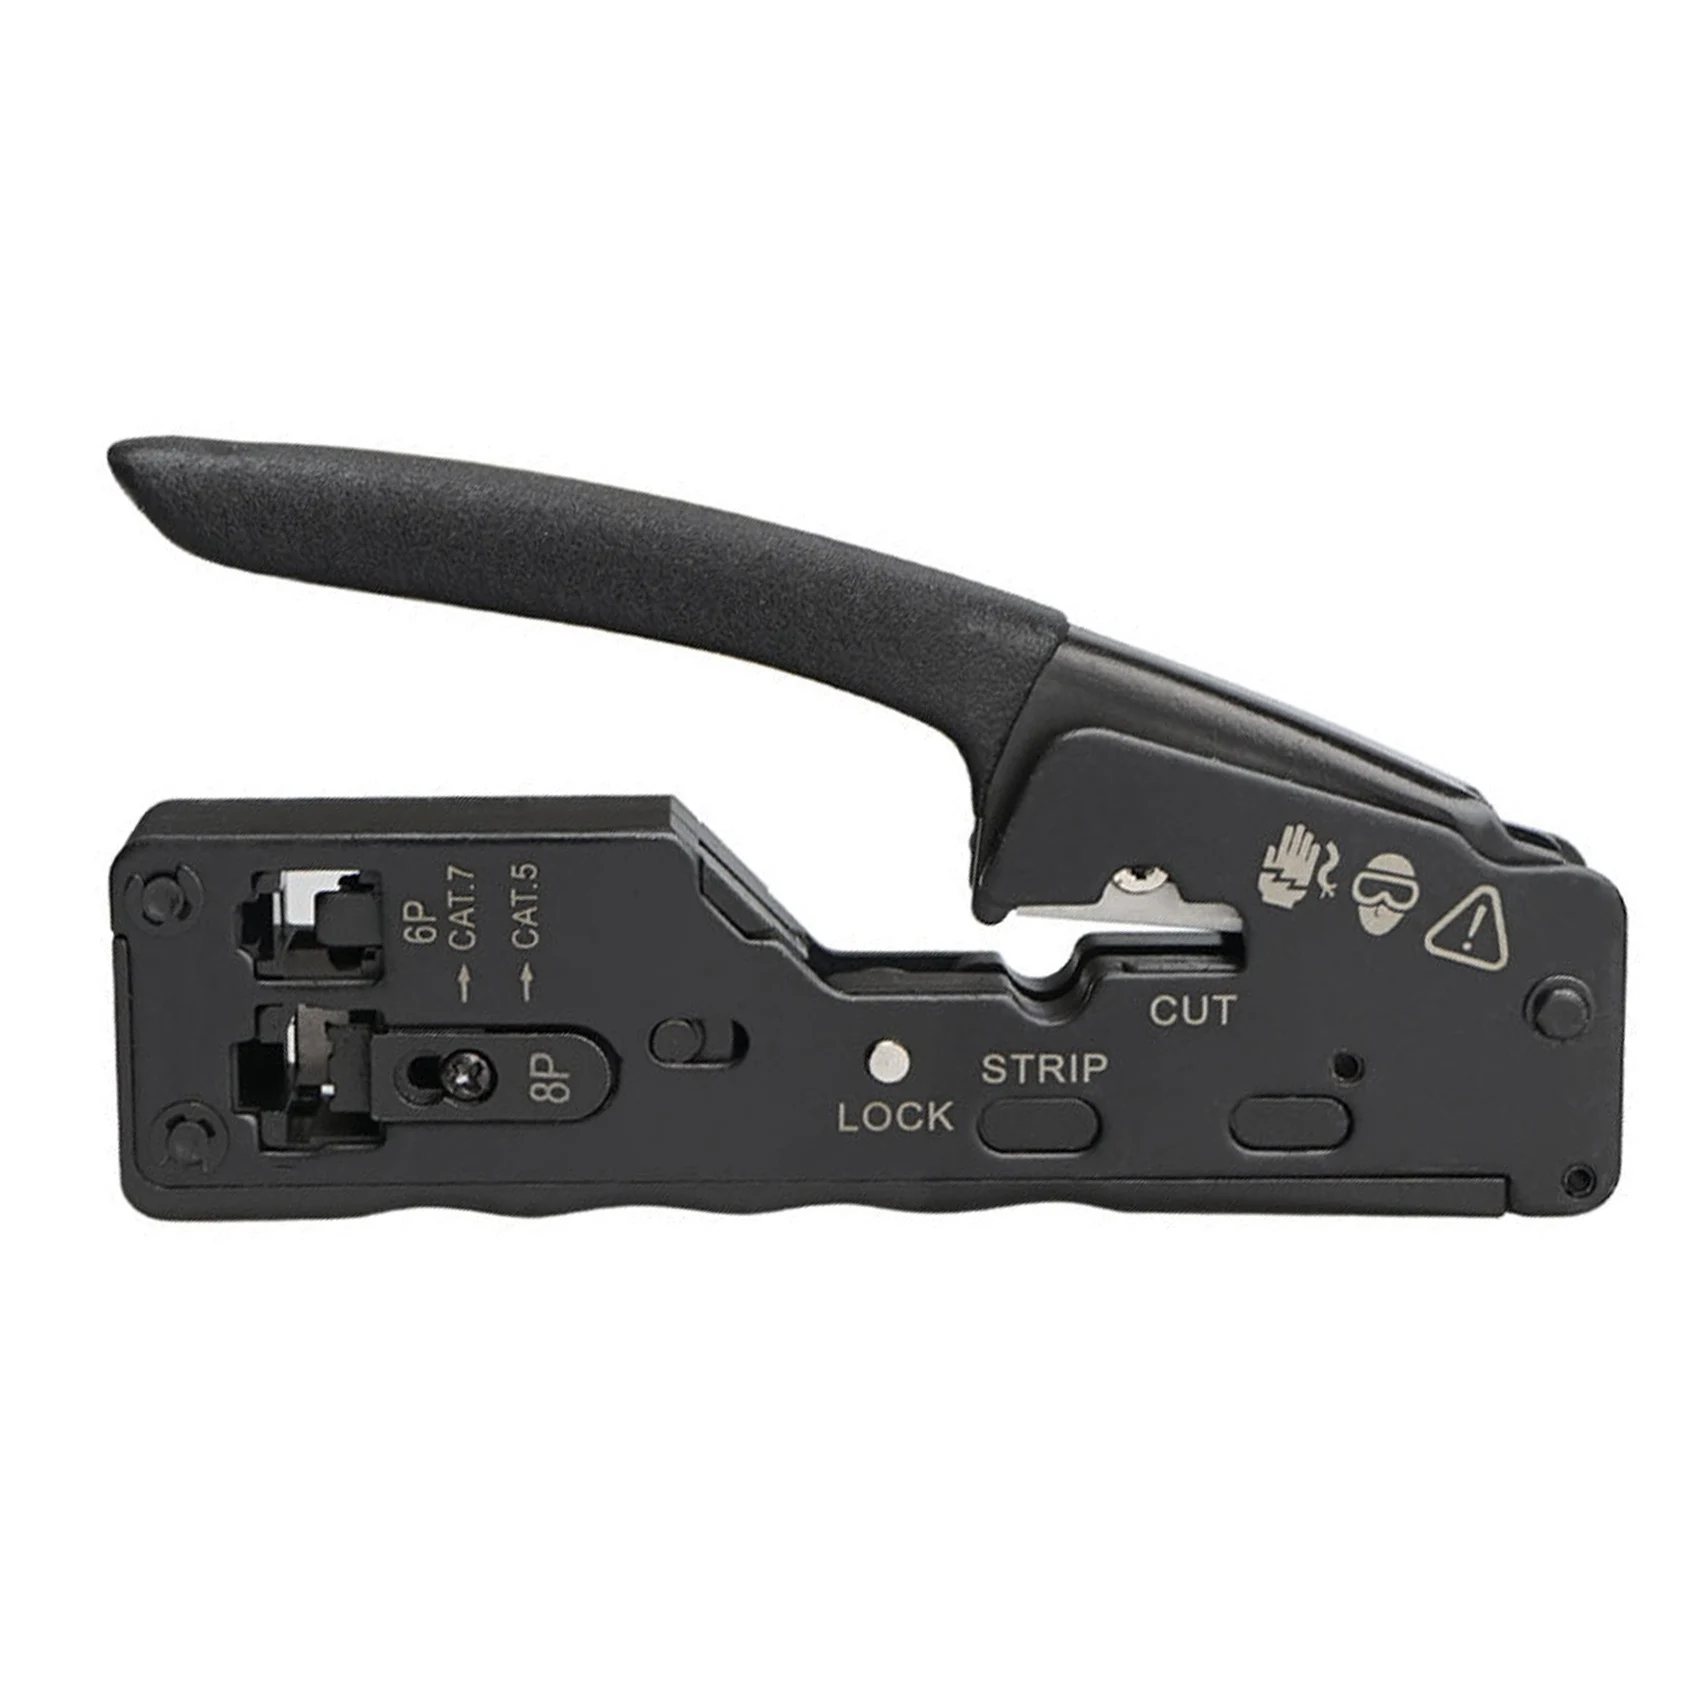 Щипцы для сетевого кабеля RJ45 Обжимной Инструмент, Резак для зачистки разъемов Rj45 Cat7 Cat6 Cat5 Rj11 Rj12, Плоскогубцы для щипцов